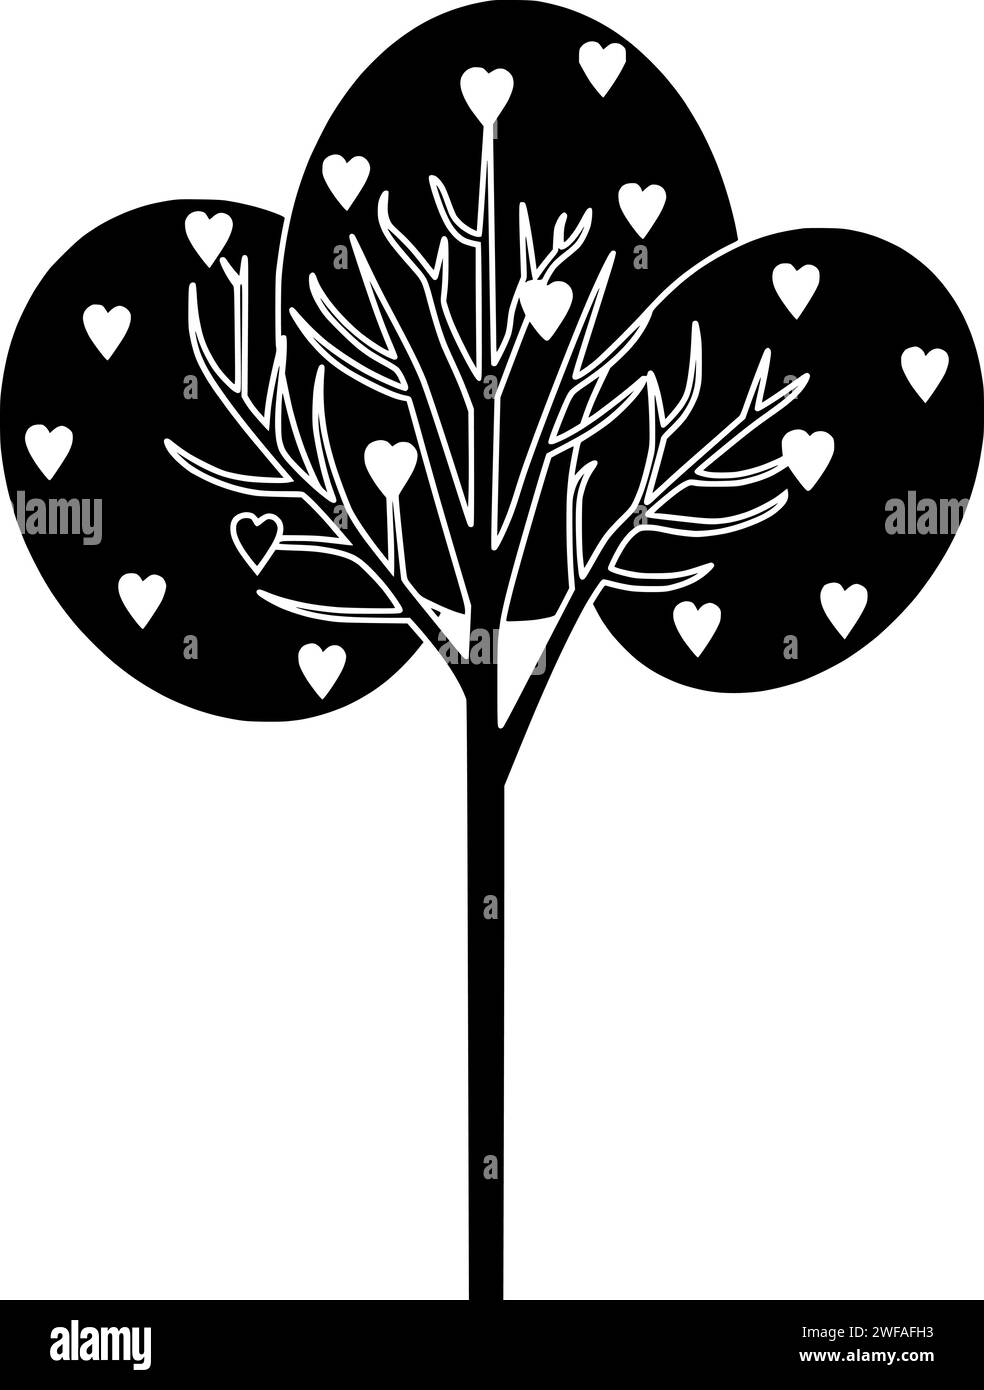 Baum Illustration Herz Silhouette Natur Logo Liebe Icon Pflanze Umriss valentine natürliche Wald Blatt grün Umwelt Frühling Tag Romantik Form Holz Garten Stamm Stock Vektor